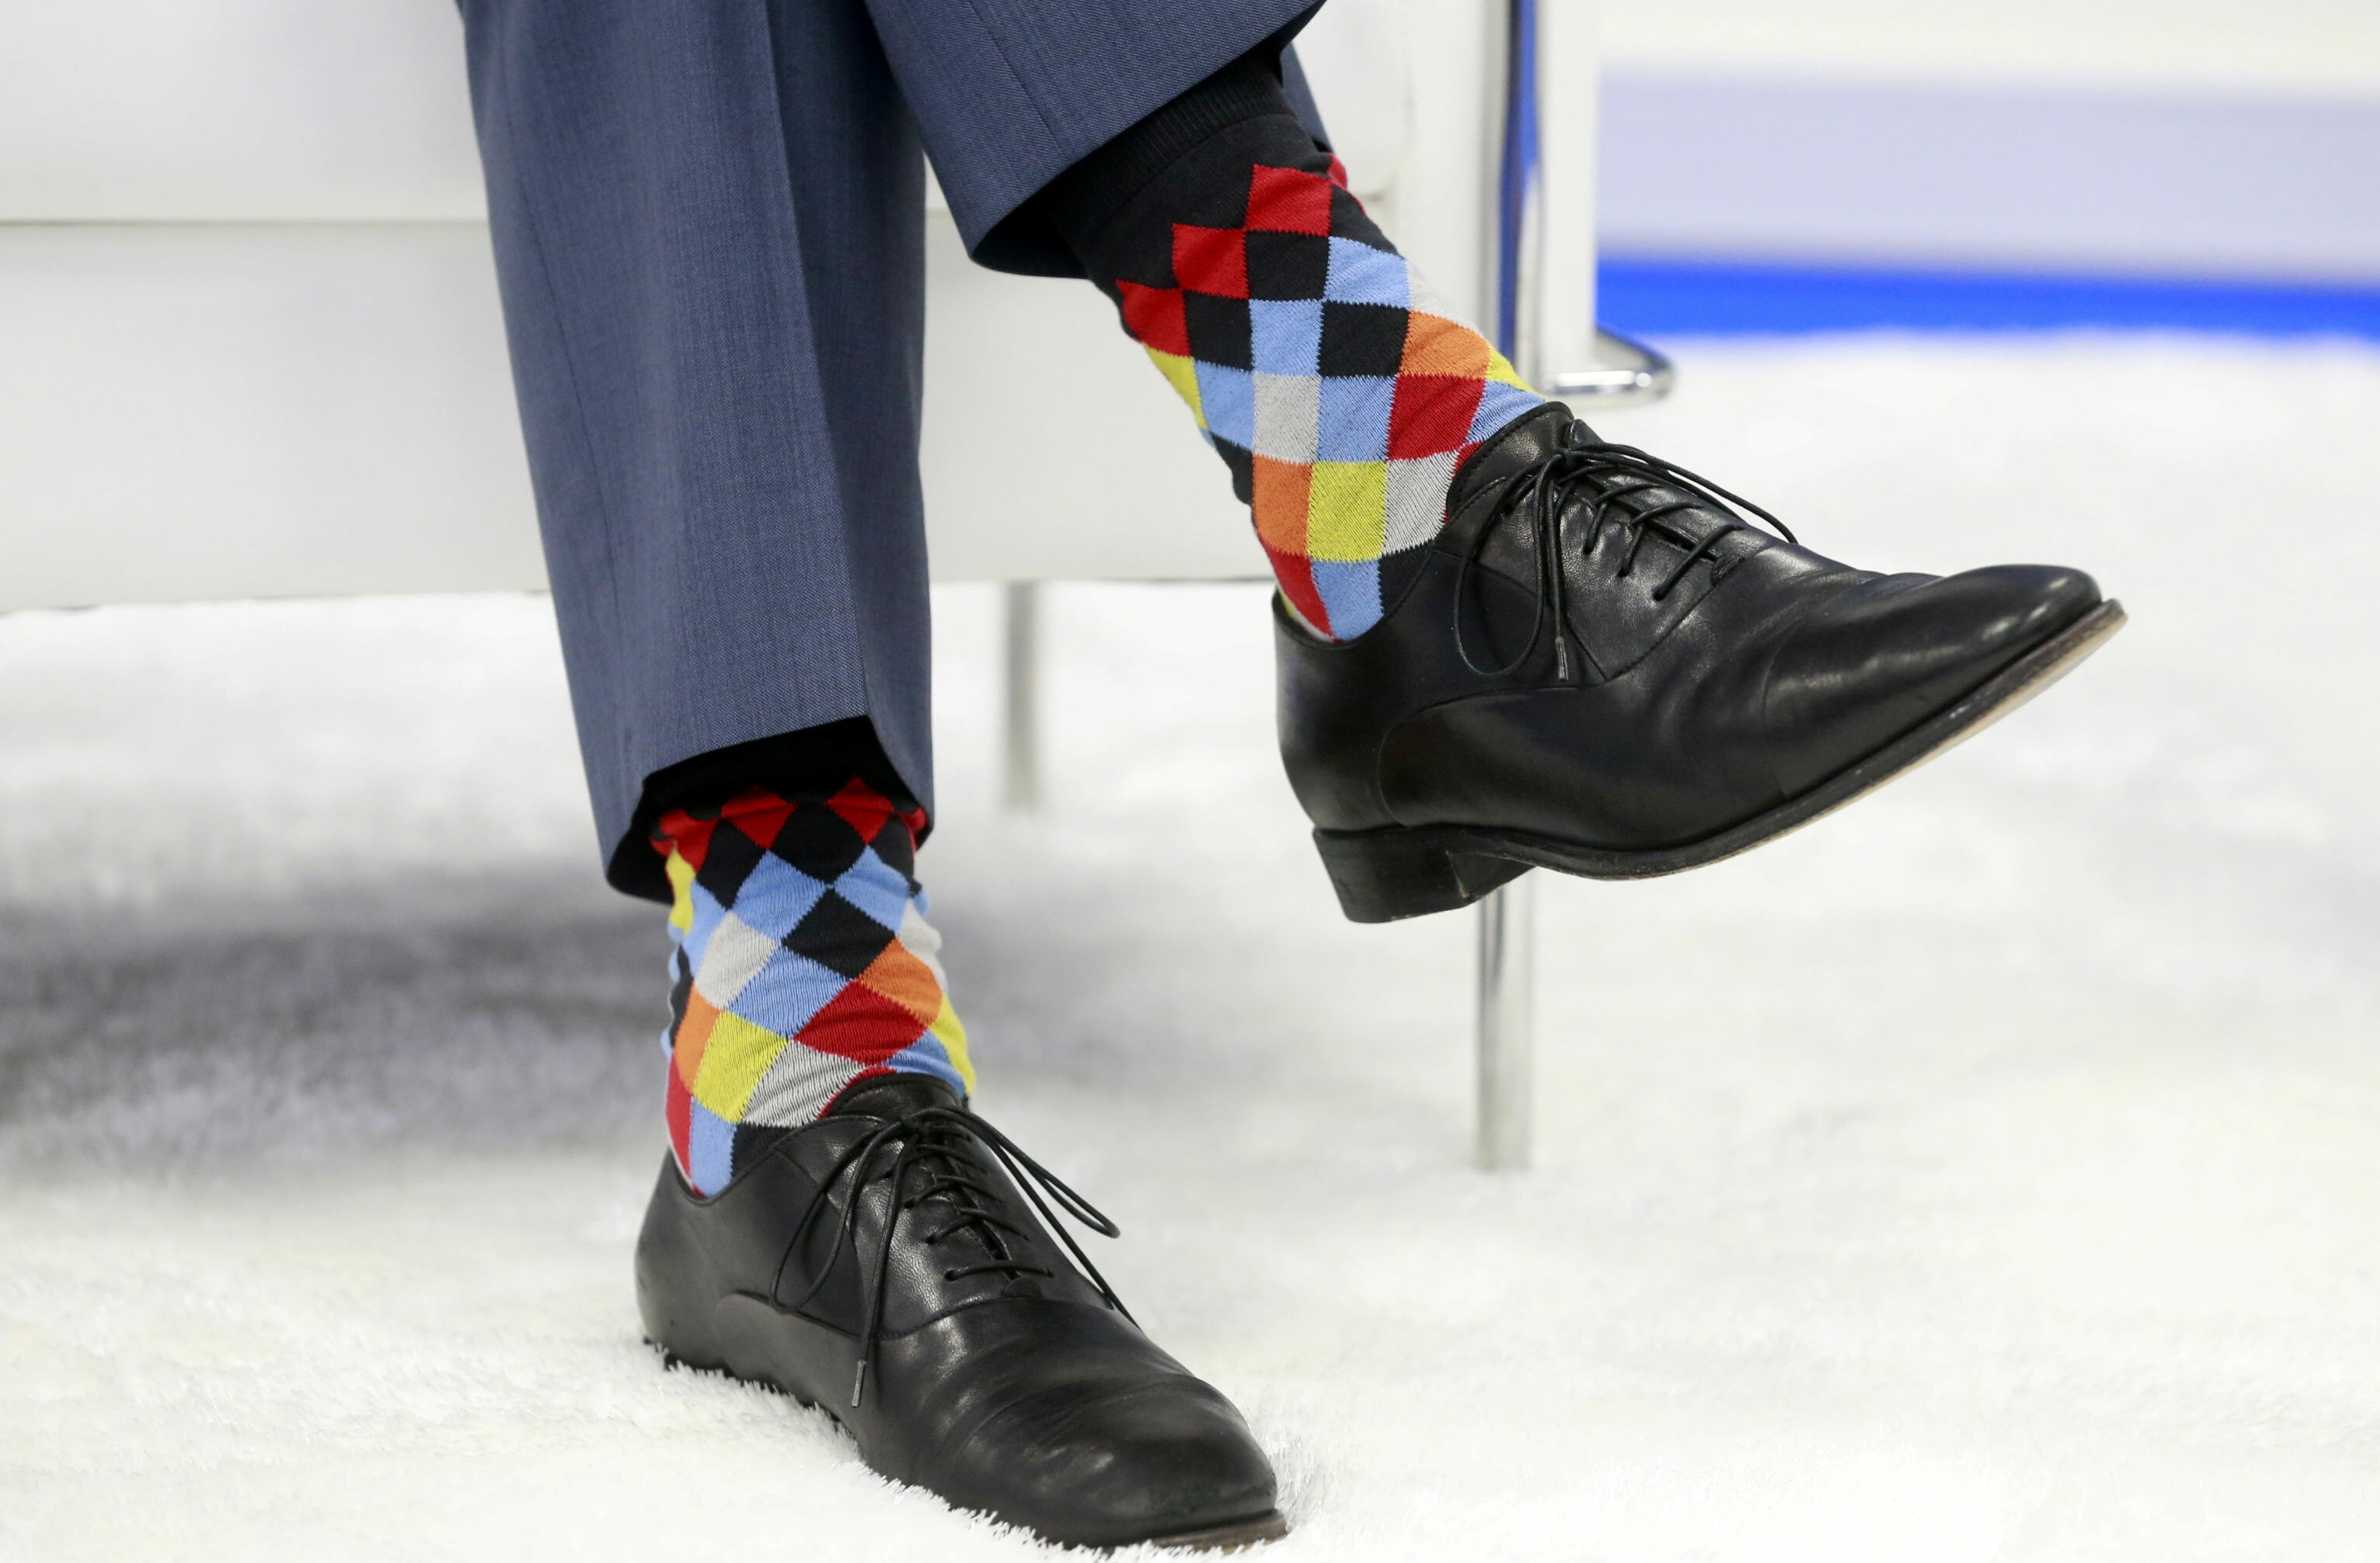 Kanada Başbakanı Justin Trudeau yine çorapları ile gündem olmayı başardı. Trudeau'nun çorapları daha öncede birçok kez haberlere konu olmuştu. 